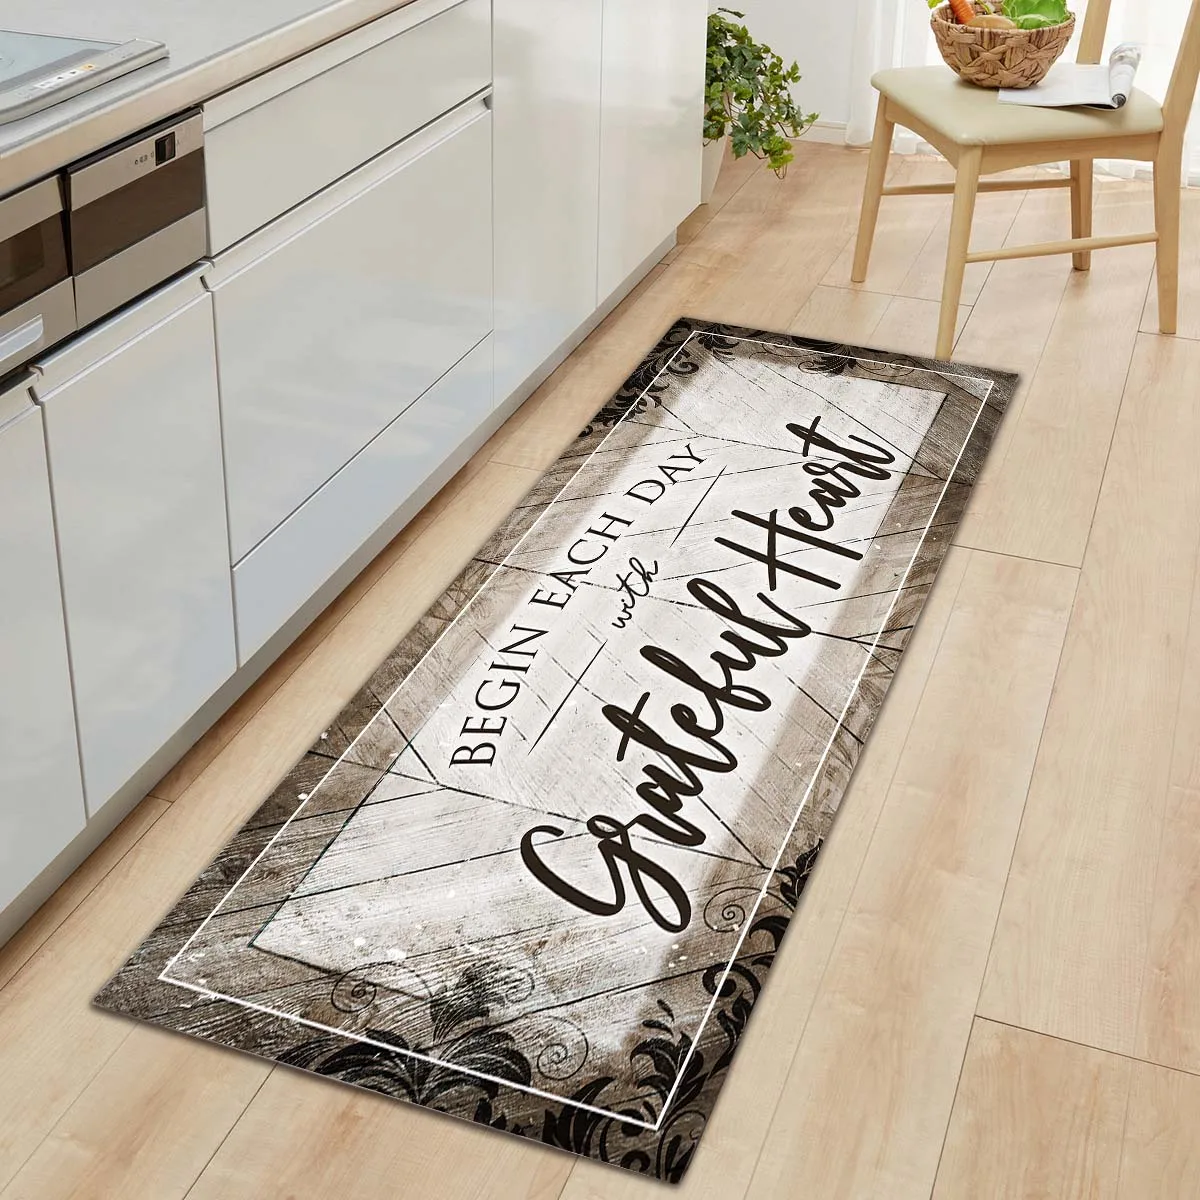 Floor Mat Kitchen Bedroom Bath Flannel Non Slip Doormat Carpet Rug Home Decor 